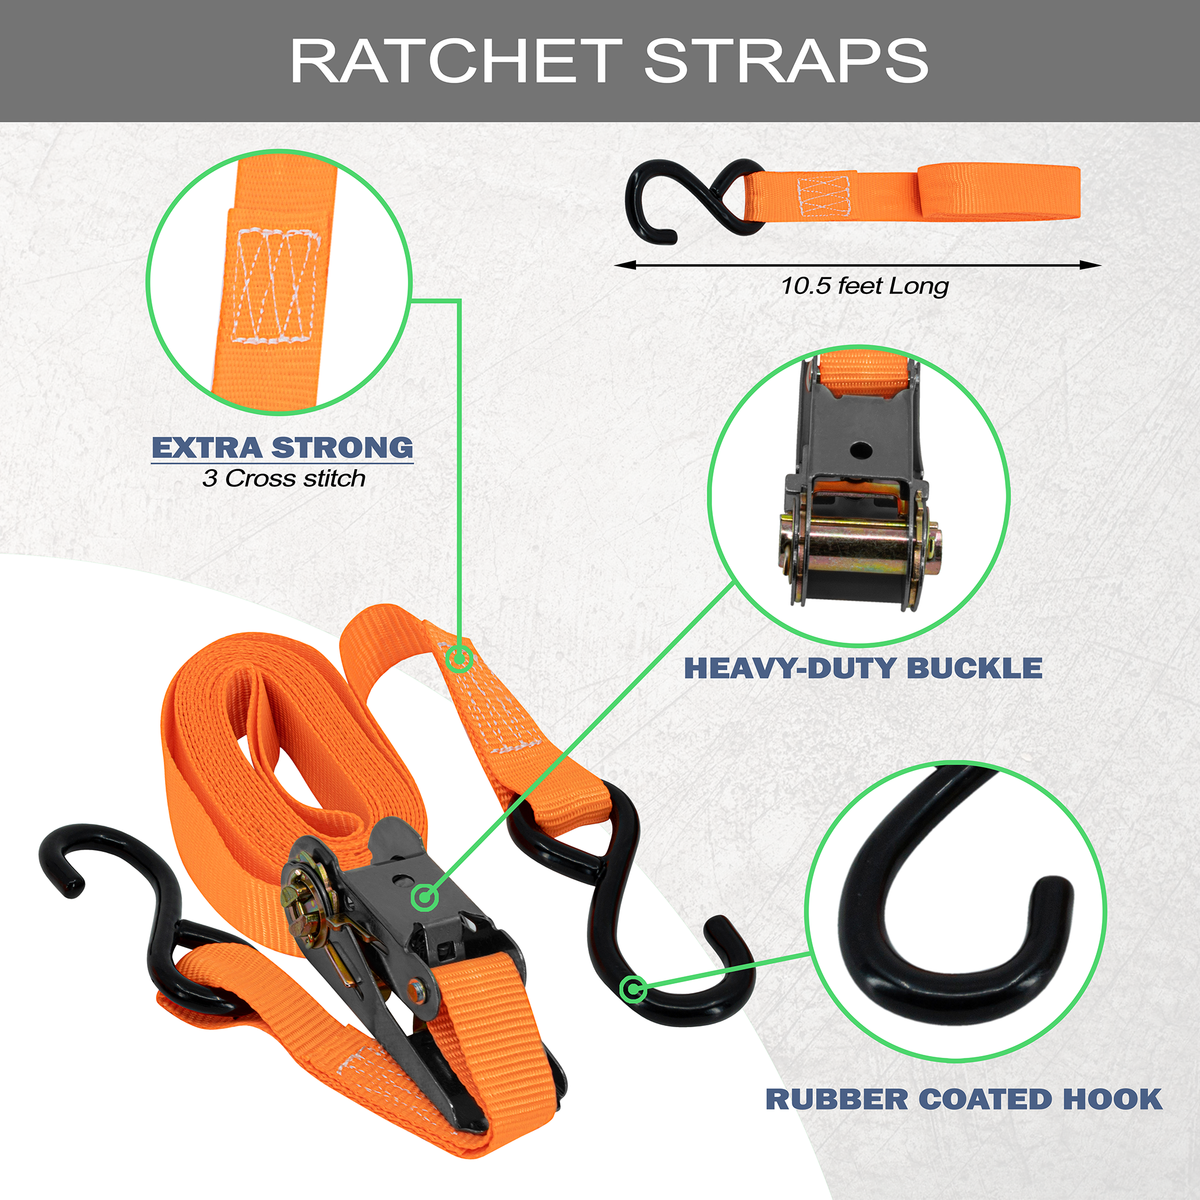 Mockins Ratchet Straps Features